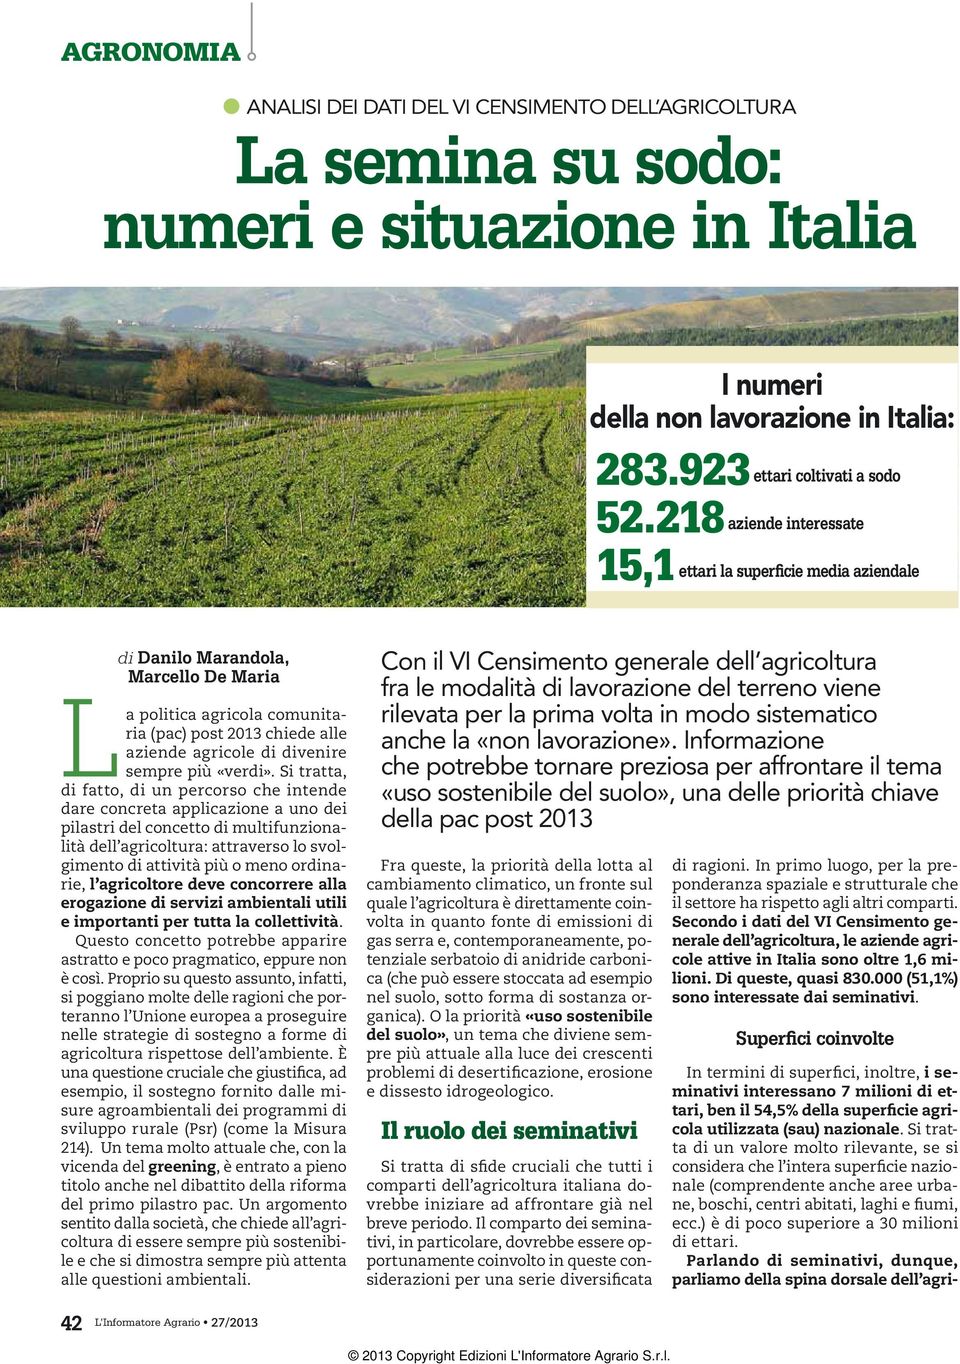 I numeri Informazione che potrebbe tornare preziosa della non lavorazione in Italia: per affrontare il tema «uso sostenibile del suolo», una delle priorità chiave della pac post 2013 283.